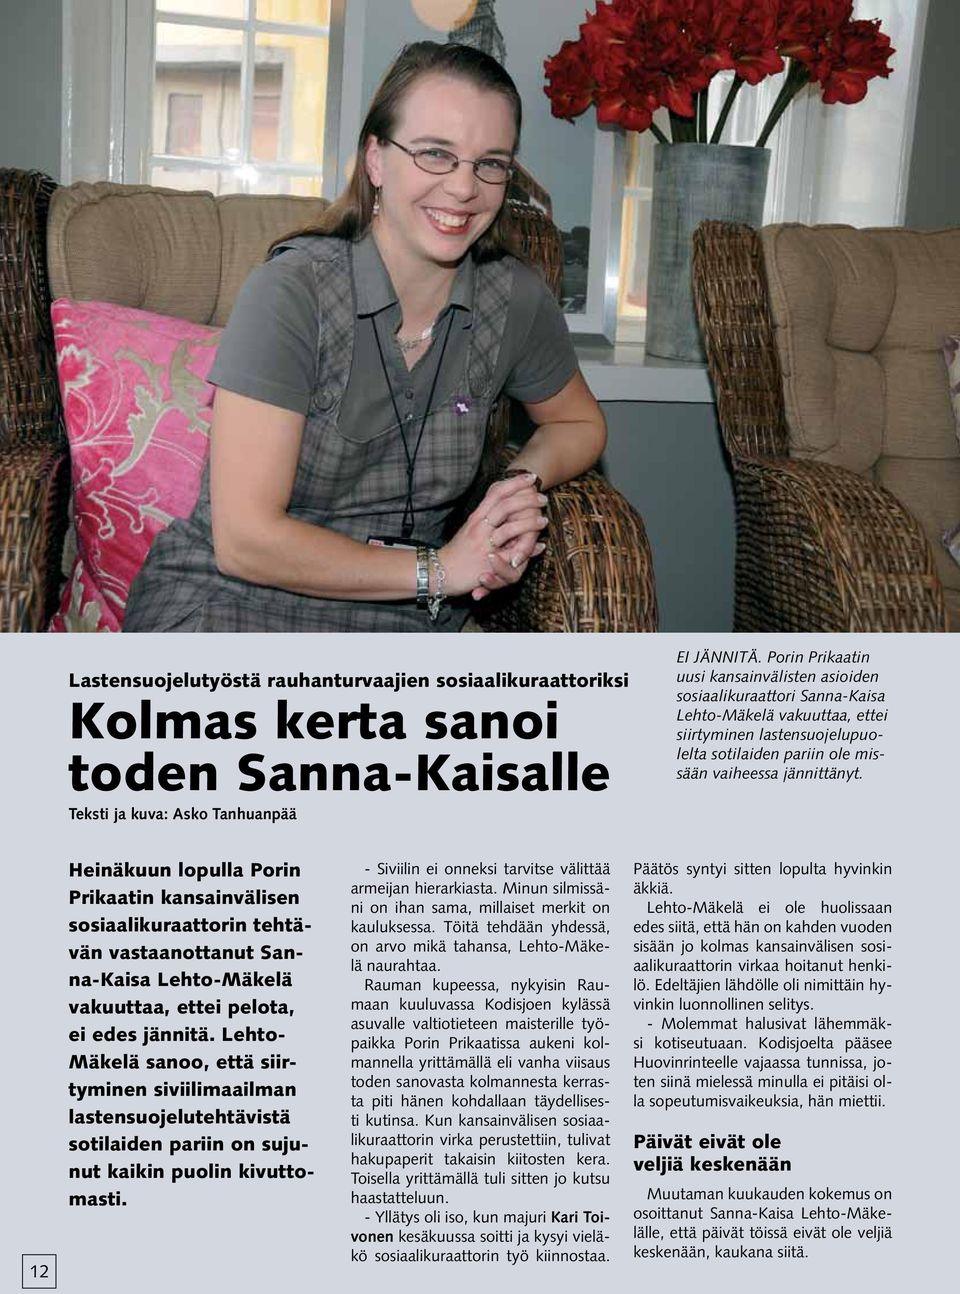 12 Heinäkuun lopulla Porin Prikaatin kansainvälisen sosiaalikuraattorin tehtävän vastaanottanut Sanna-Kaisa Lehto-Mäkelä vakuuttaa, ettei pelota, ei edes jännitä.